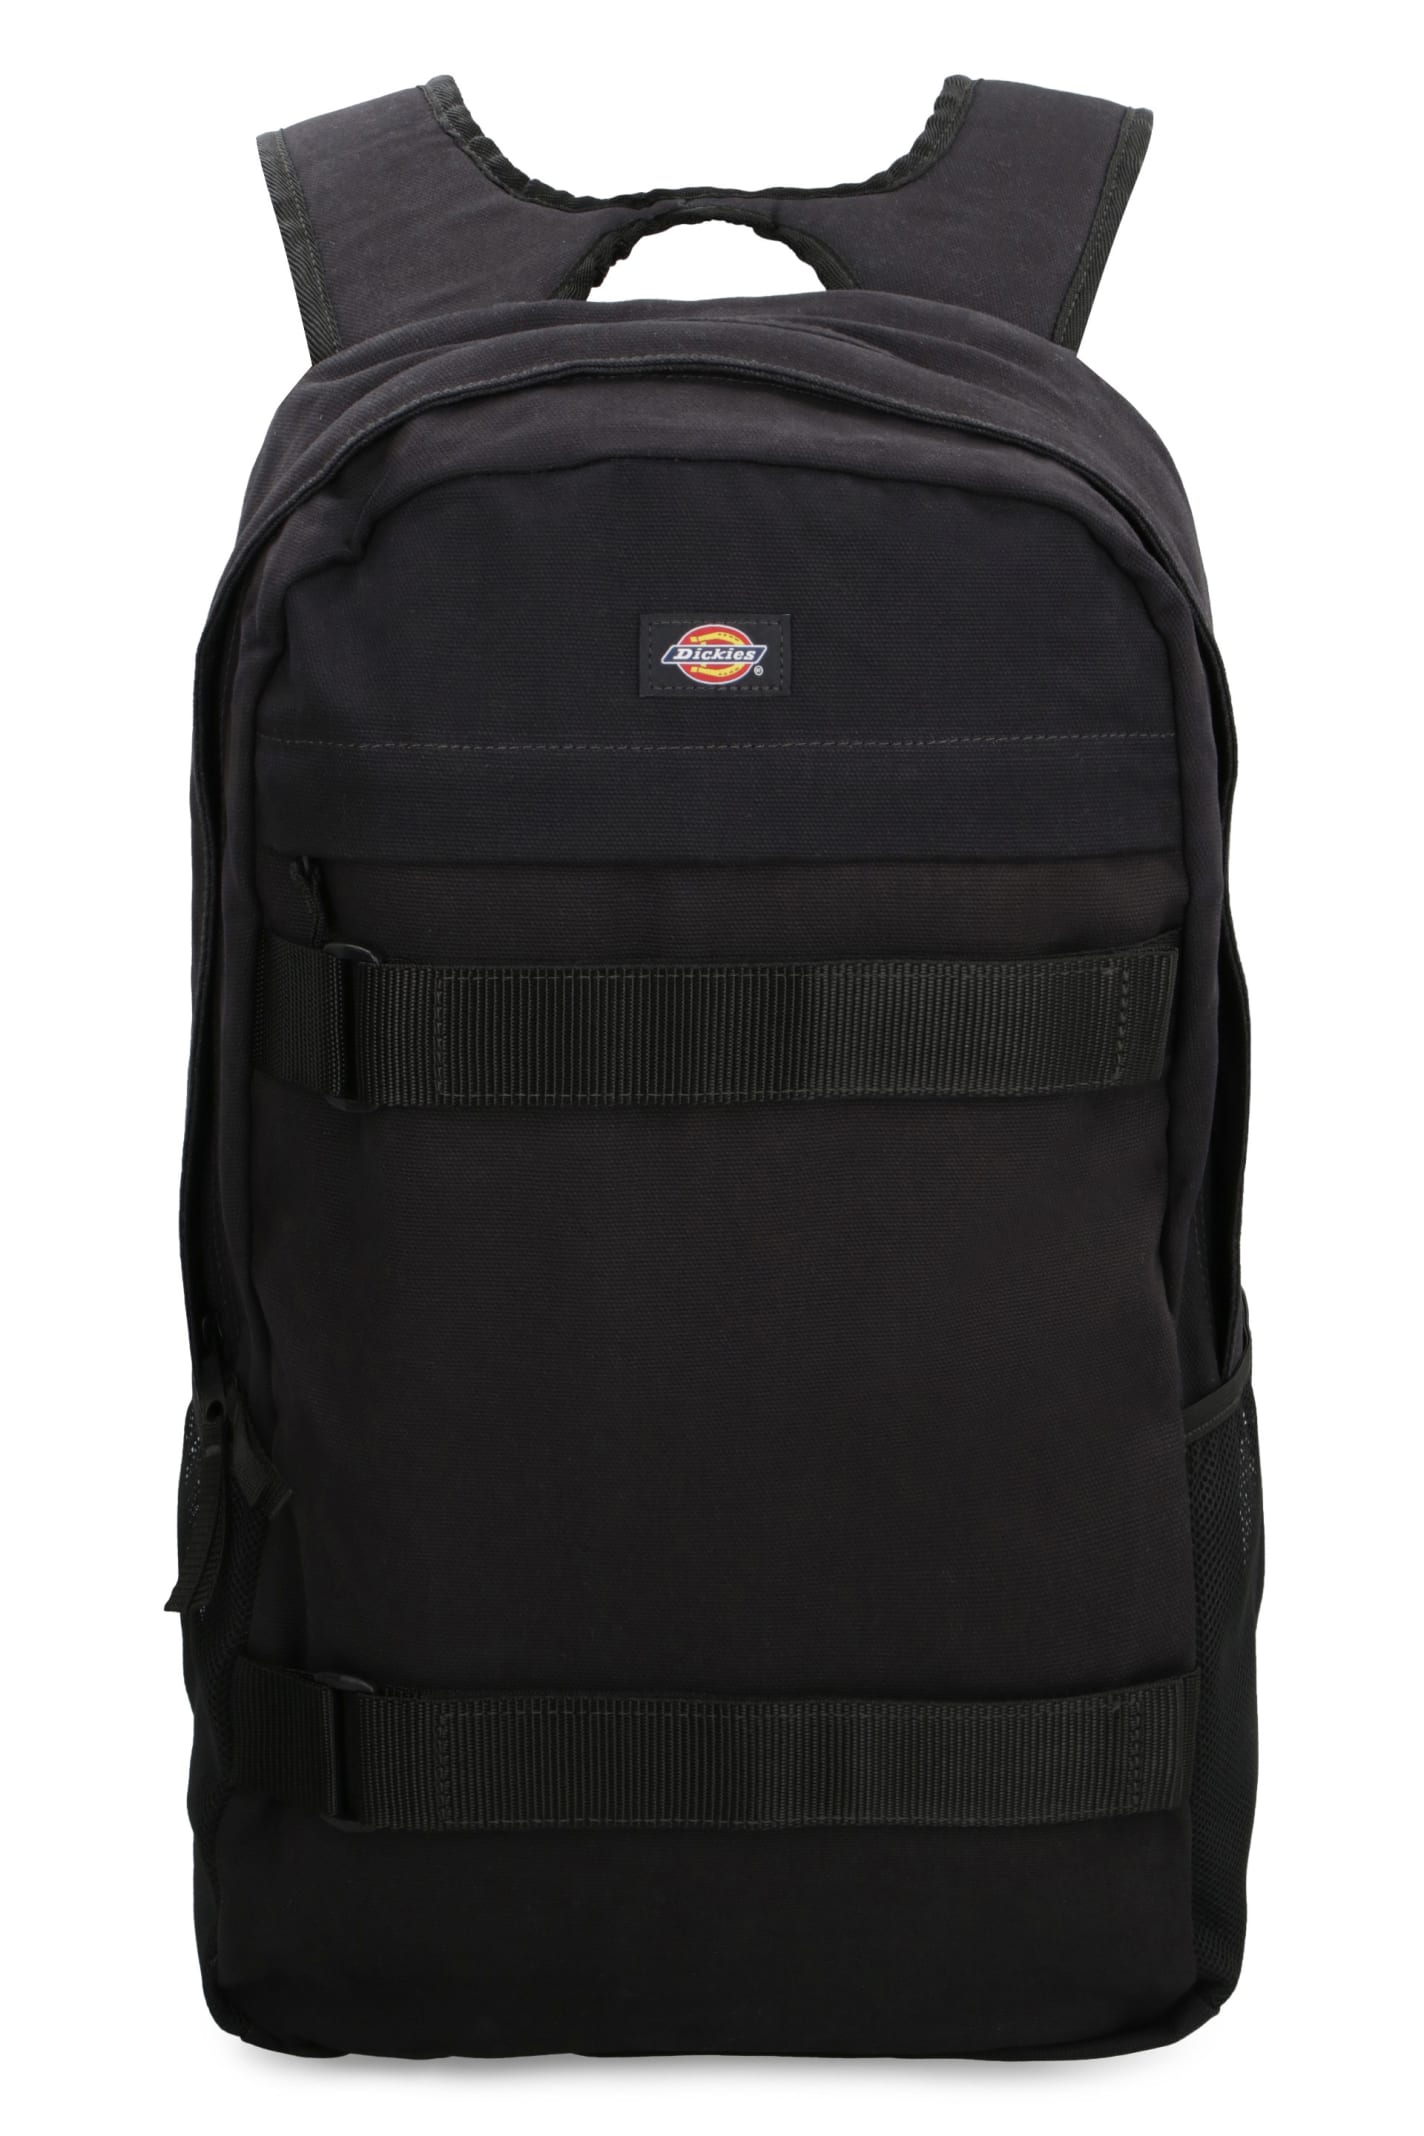 Dickies Canvas Backpack In Black